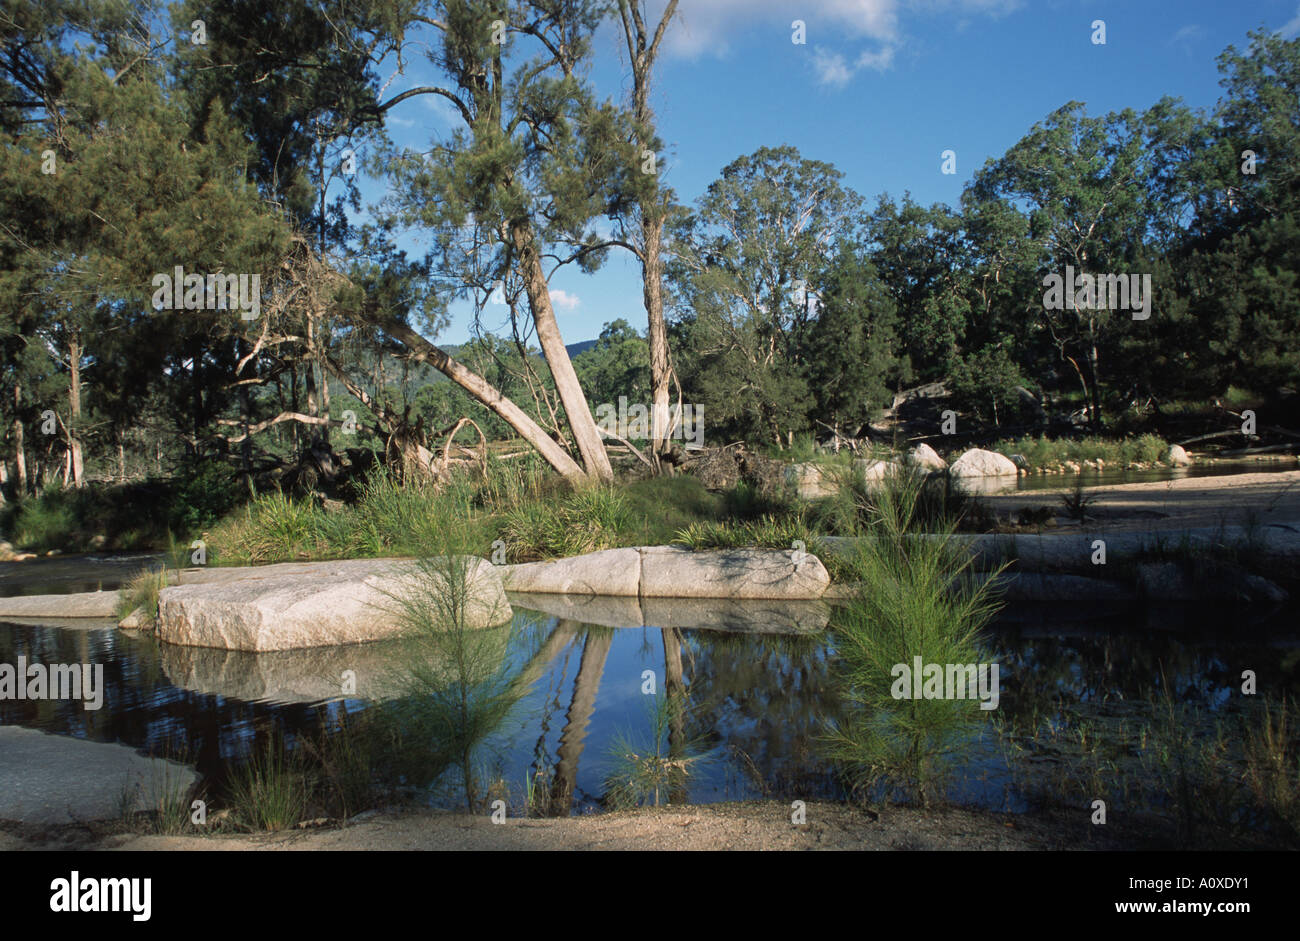 La rivière peint une scène paisible comme il coule à travers la réserve naturelle de la rivière Mann, NSW, Australie. Banque D'Images